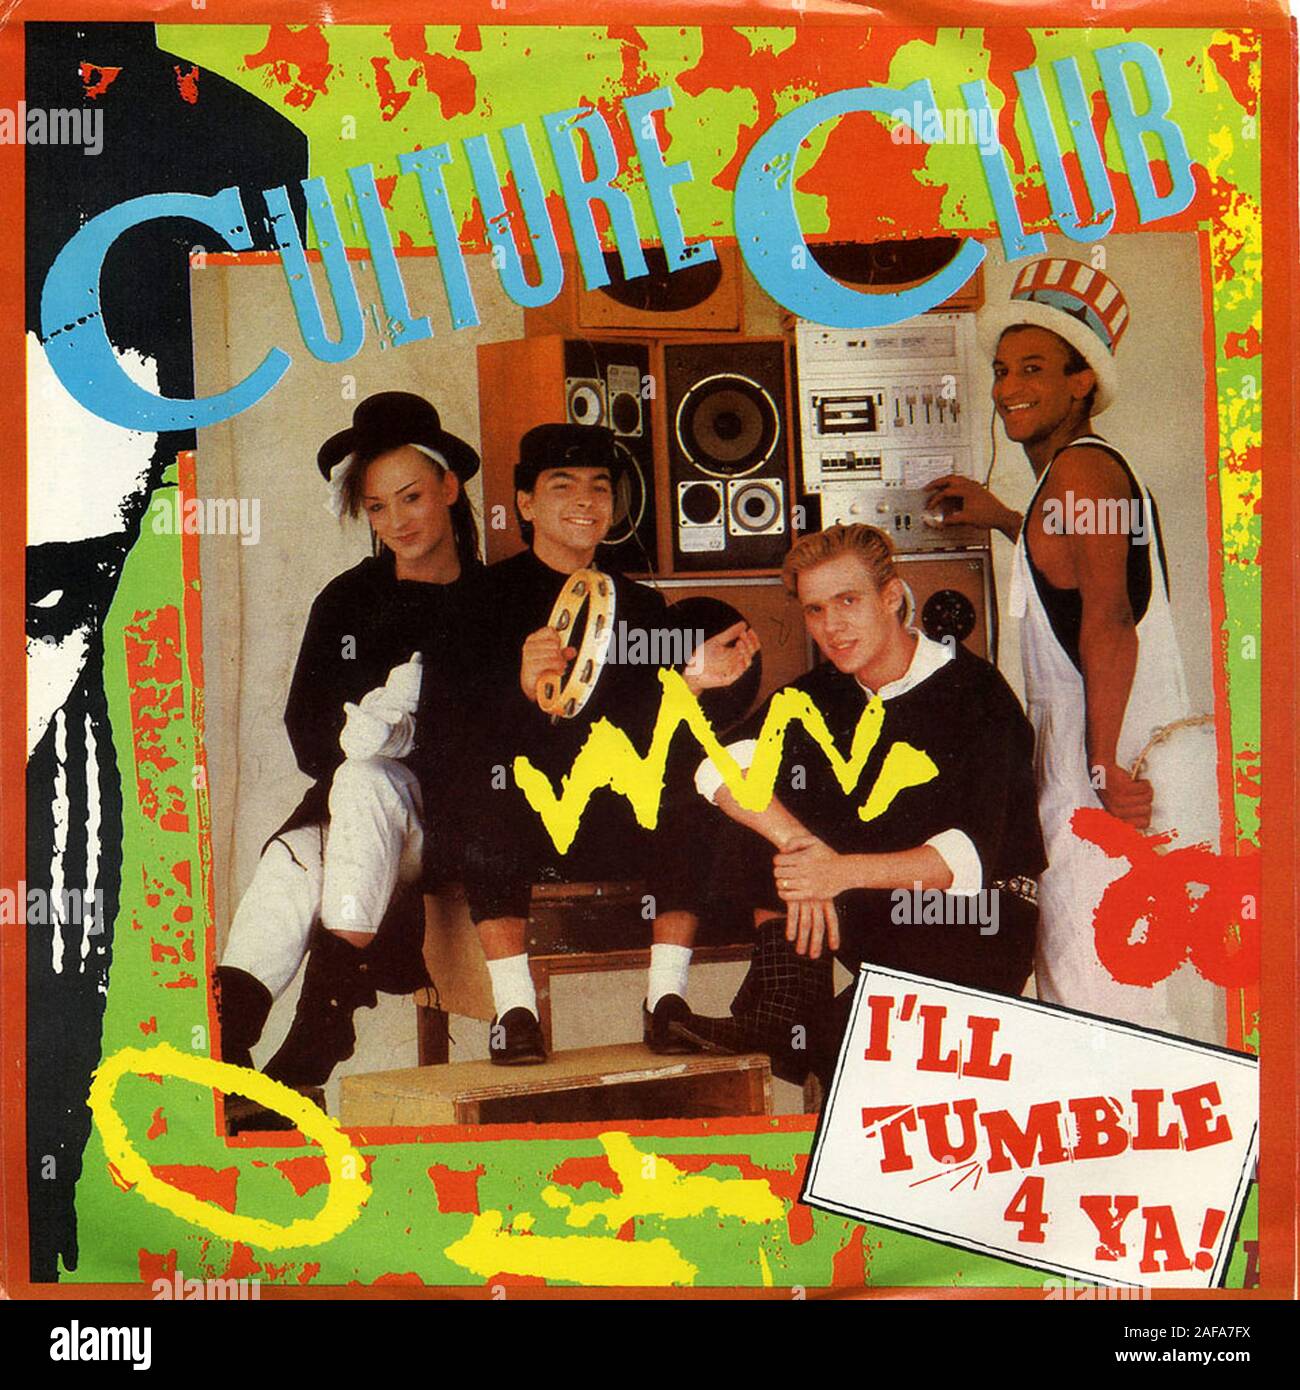 Culture Club — I&#039;ll Tumble 4 Ya cover artwork